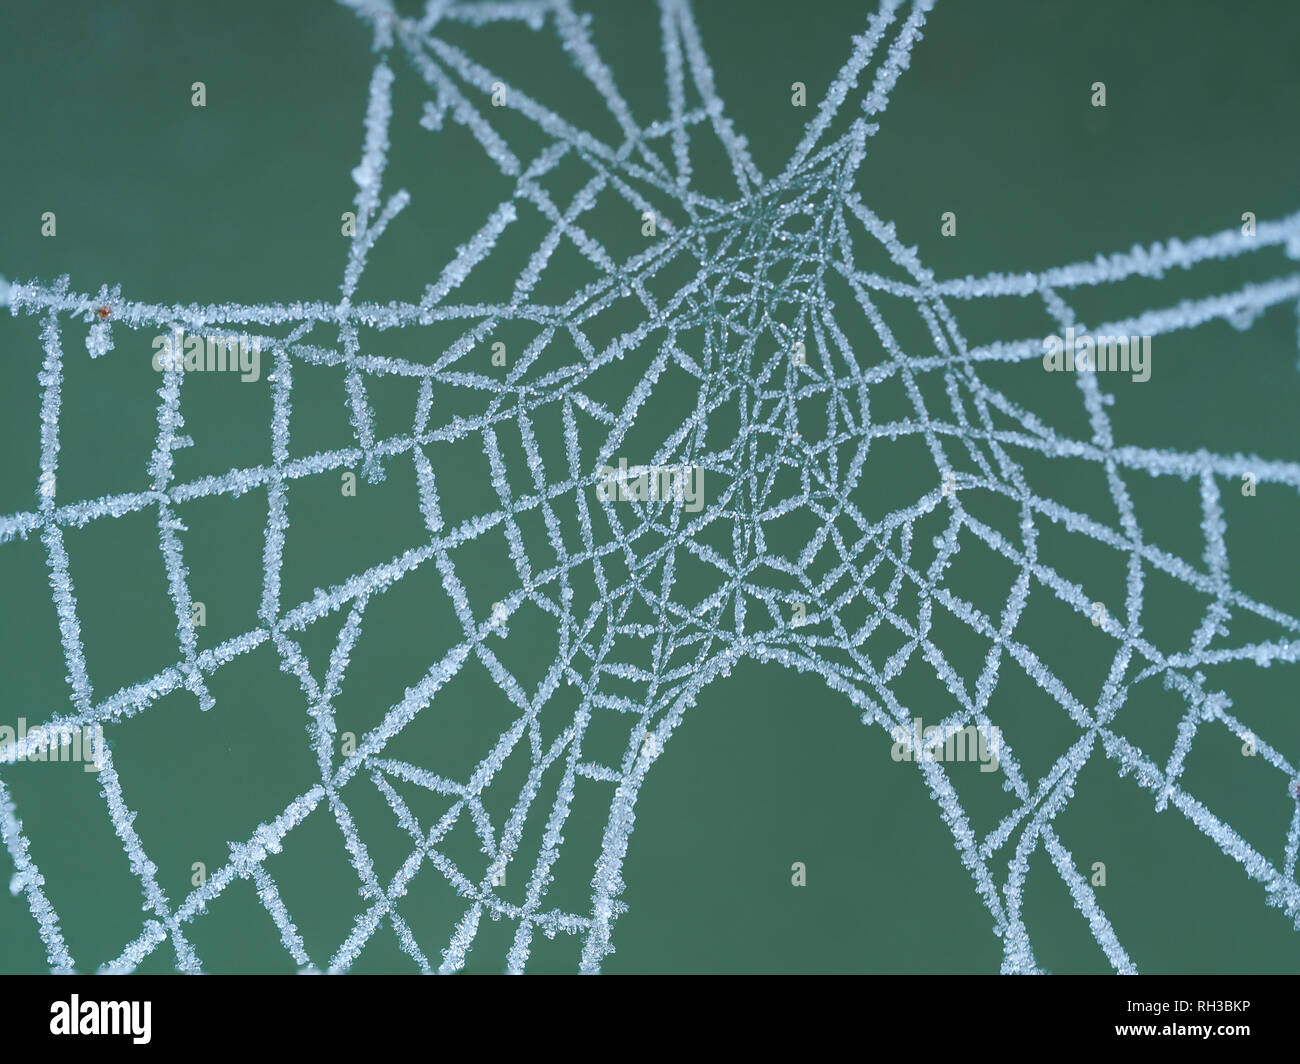 Frozen Spider Web Macro Photos